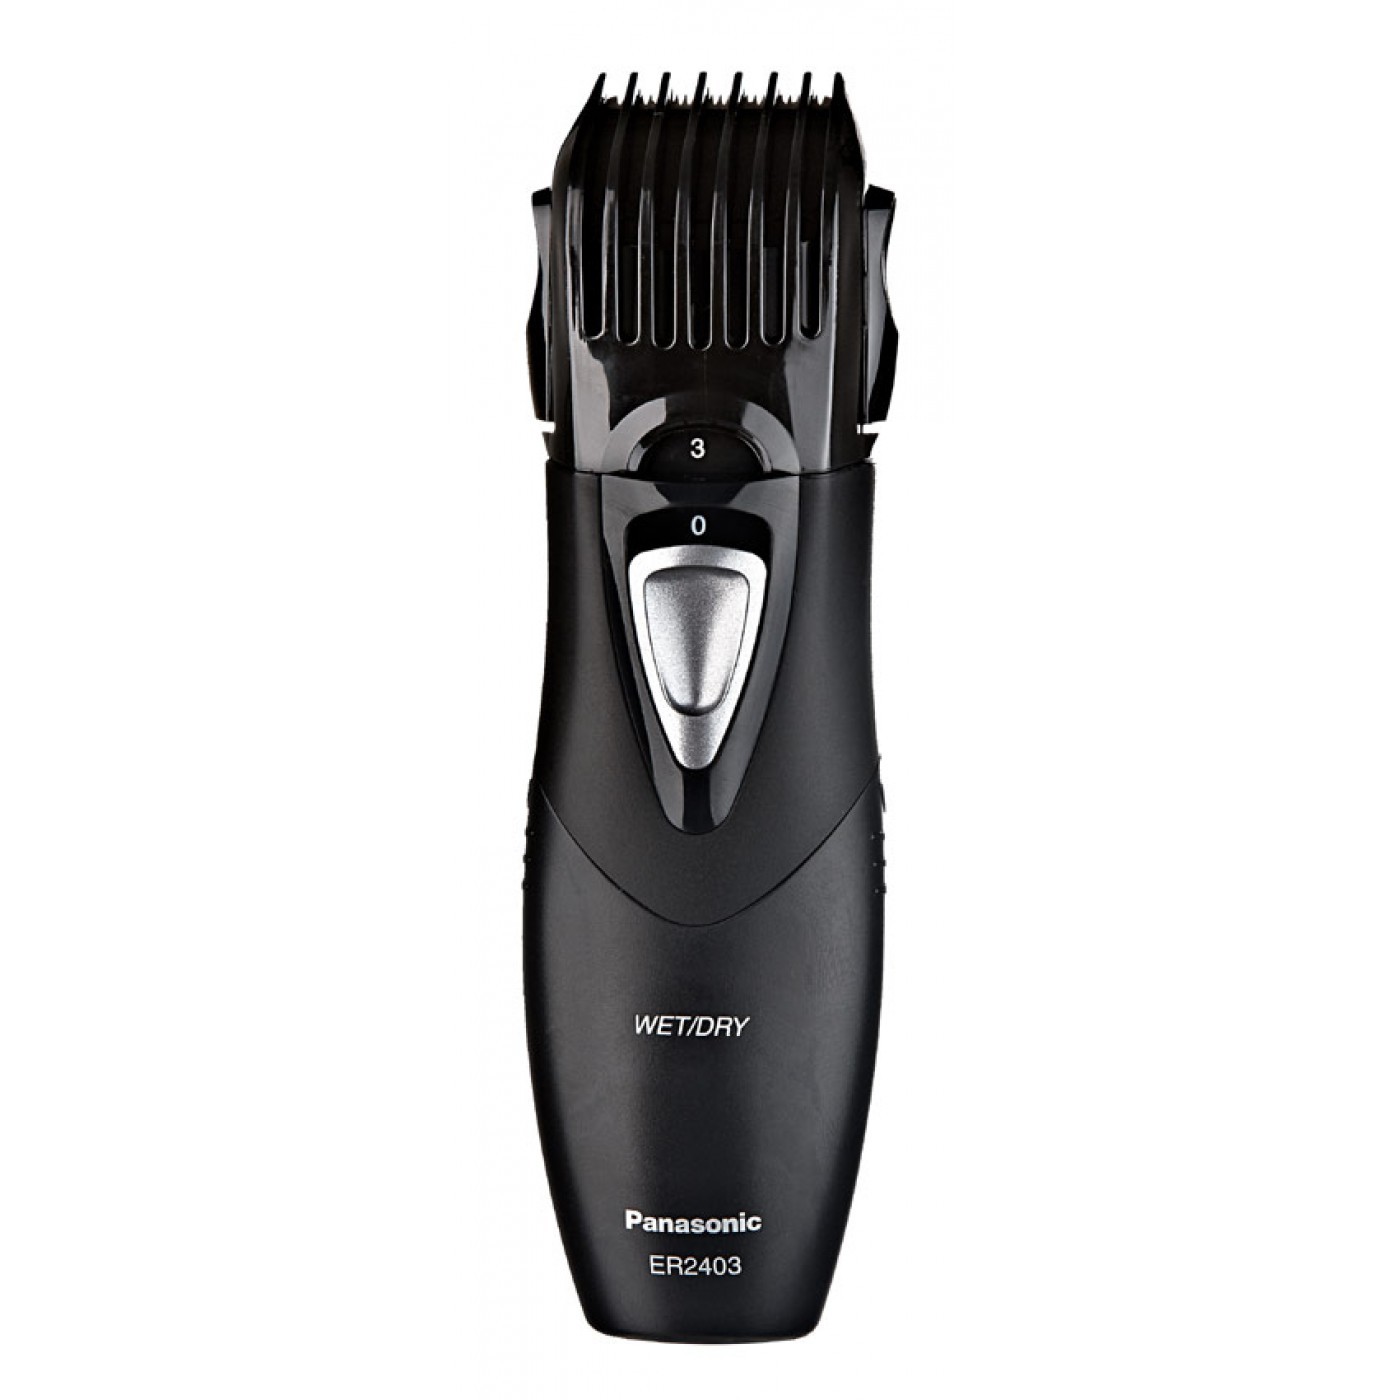 Panasonic hair trimmer photo